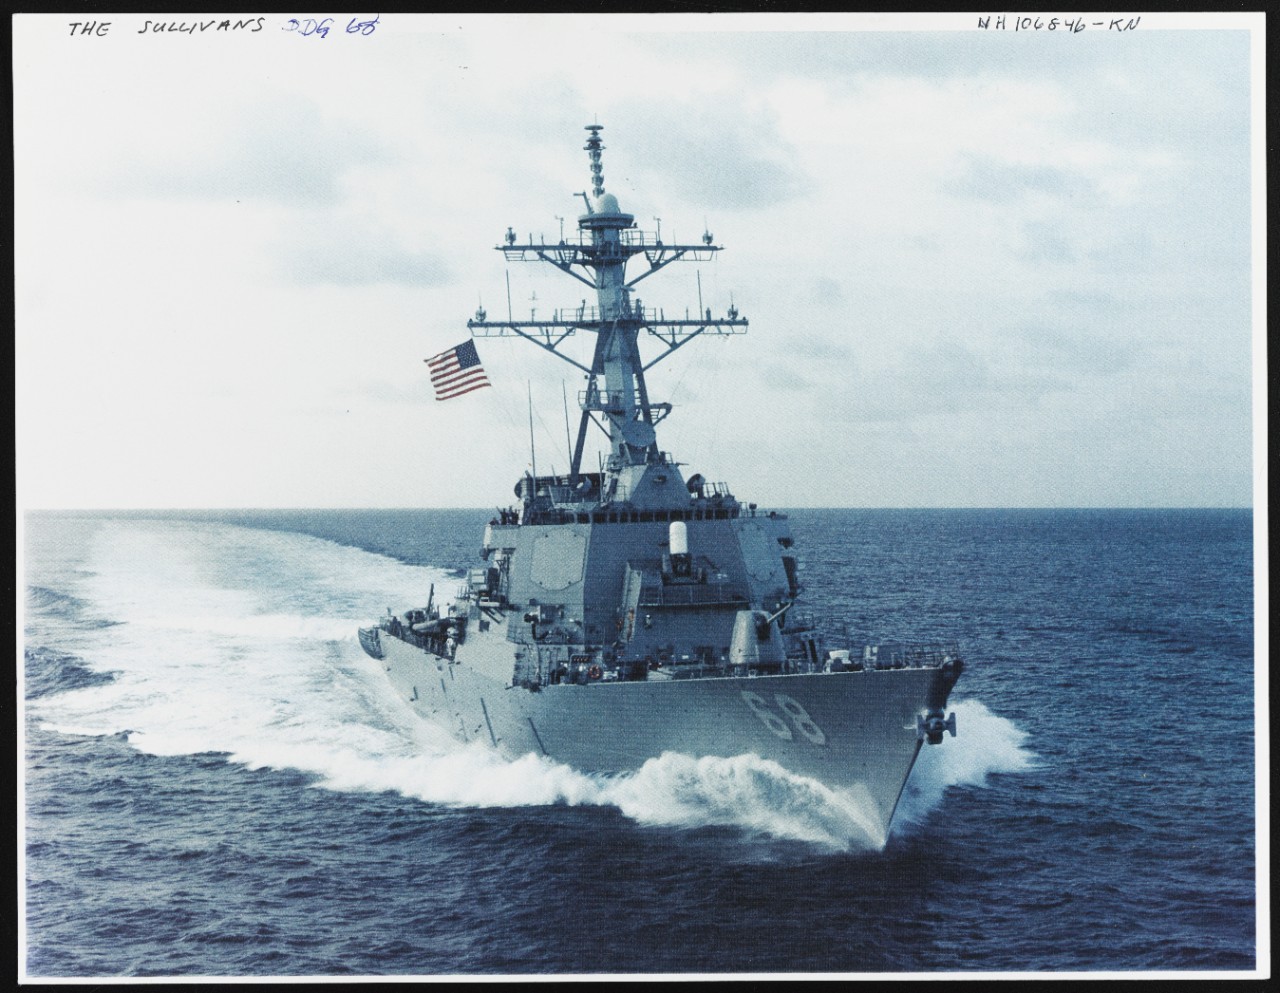 Photo # NH 106846-KN USS The Sullivans